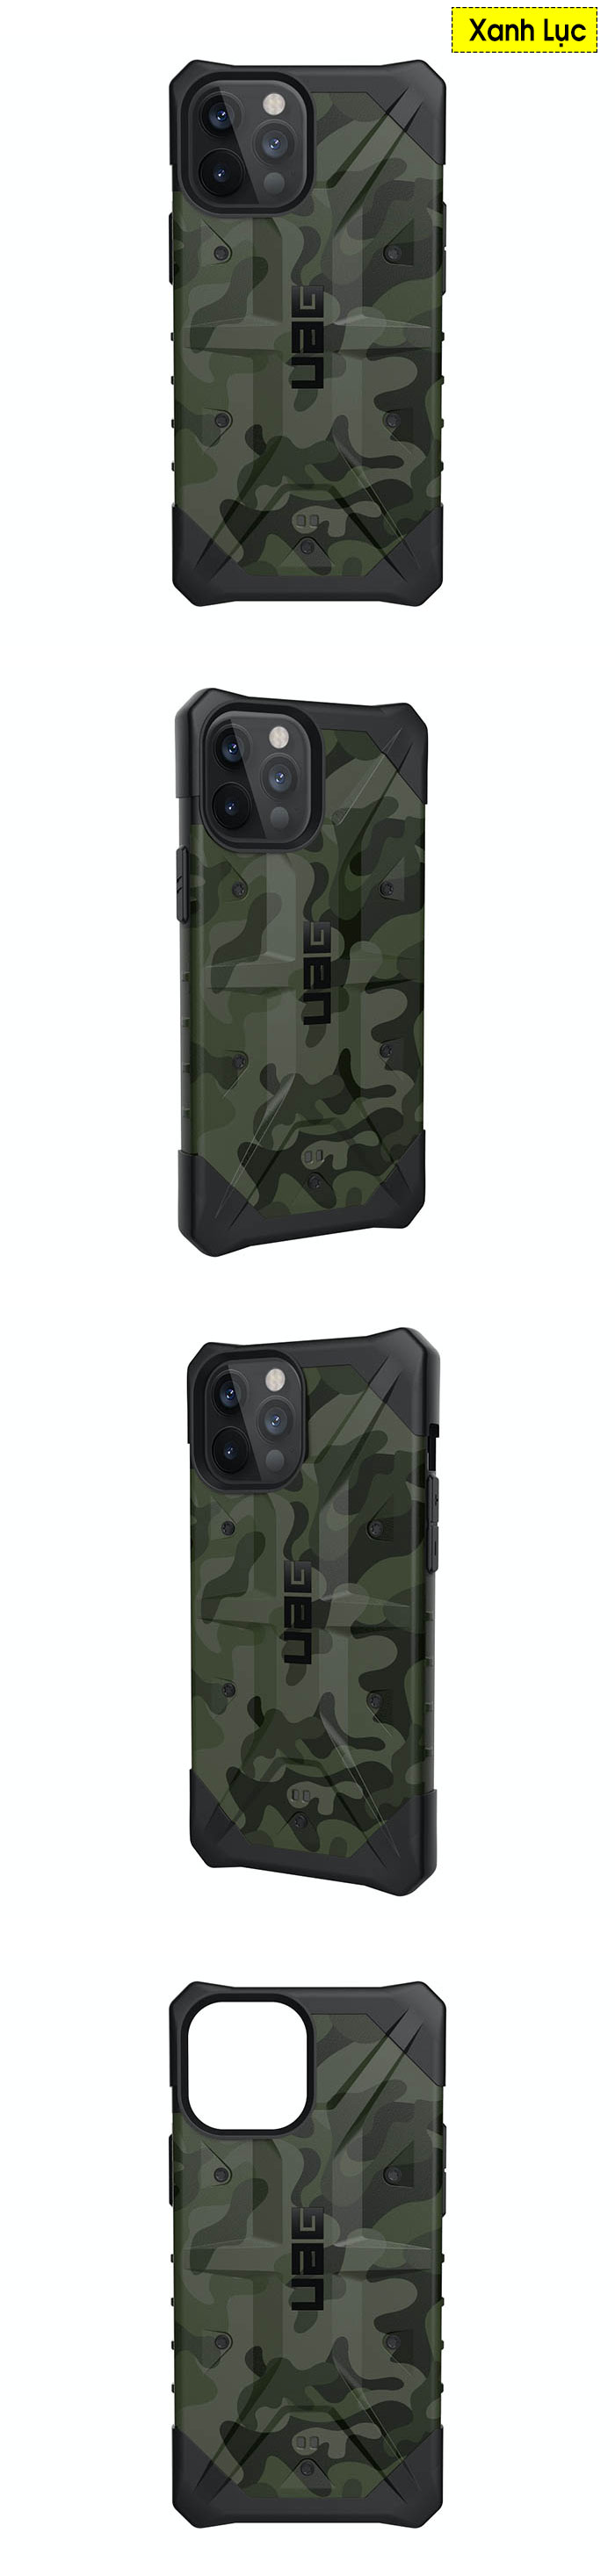 Ốp lưng iPhone 12 Pro Max UAG Pathfinder SE Camo 2